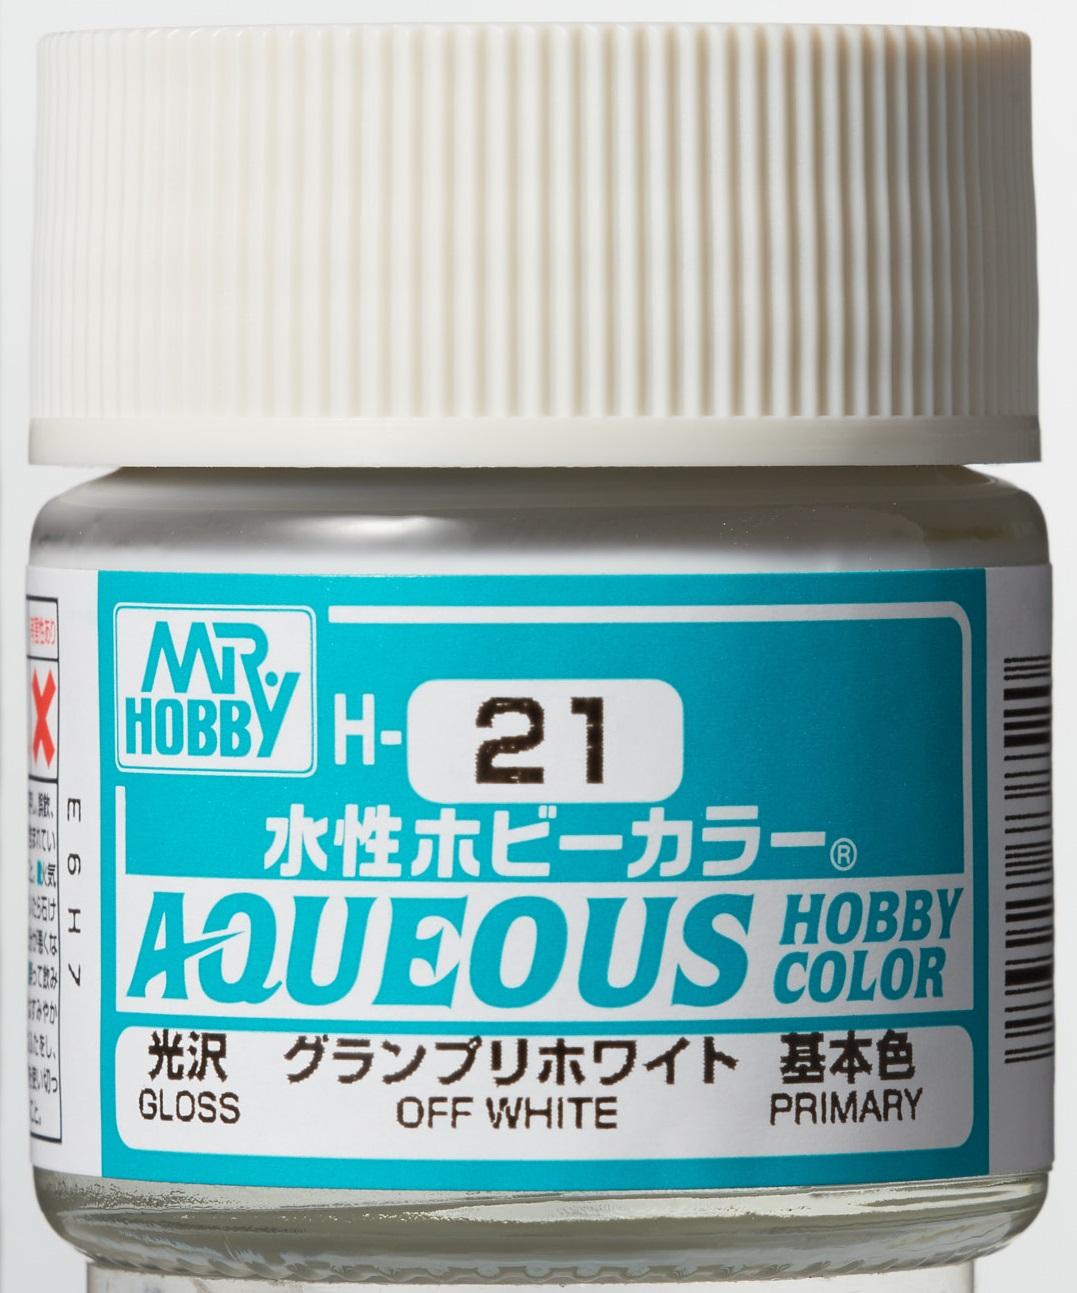 Mr. Hobby Aqueous Hobby Color H21 Gloss Off White 10ml Bottle